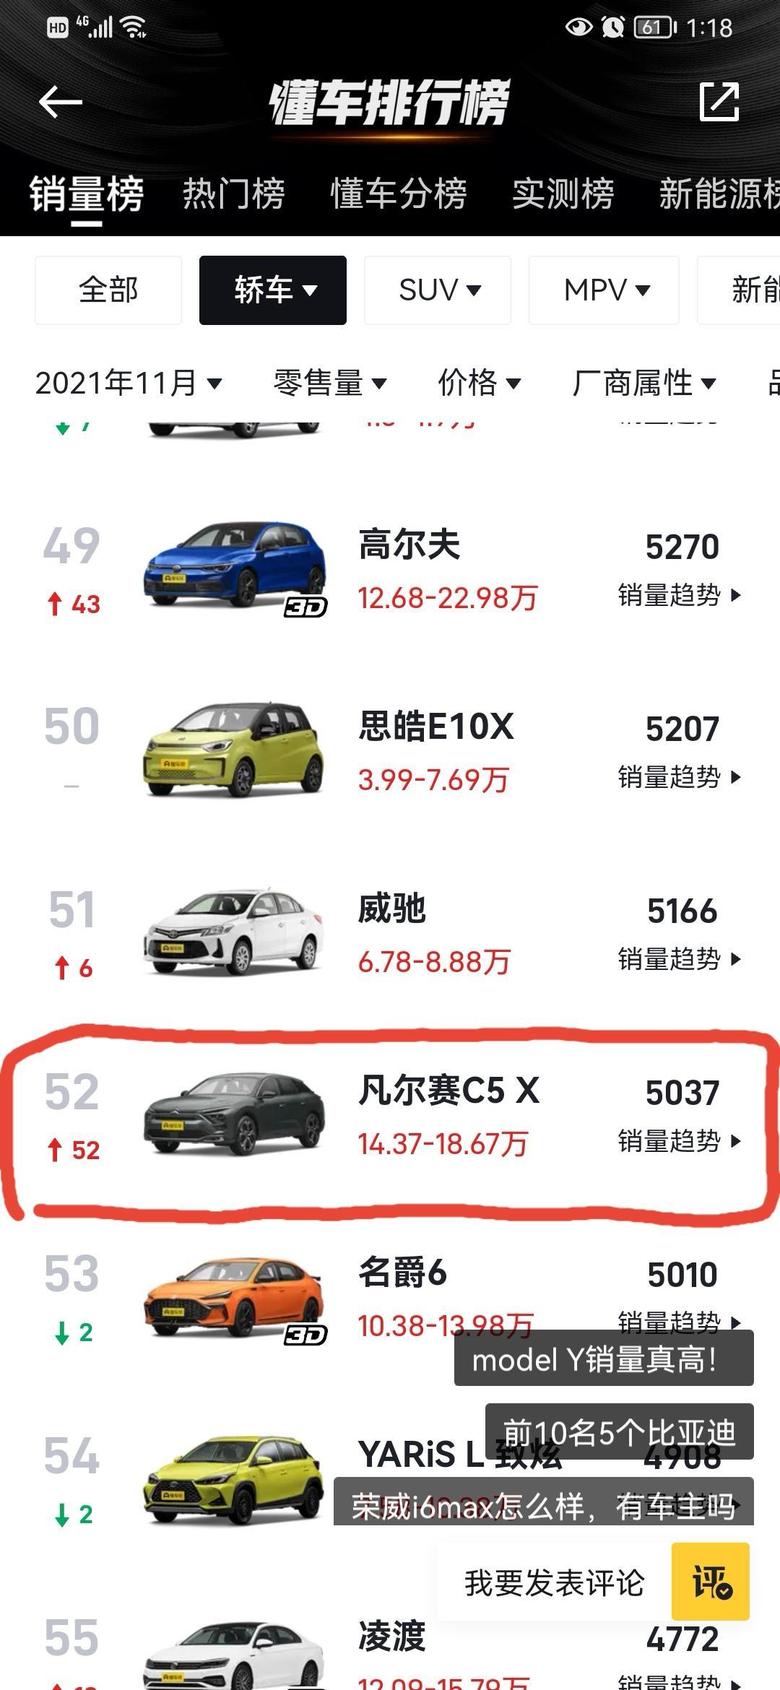 凡尔赛c5 x 这个是懂车帝官网发布的2021年11月汽车销量排行榜，最近法系这么?，凡尔赛C5X，更是斩获获法系在华销量冠军头衔，共计5037辆，加上其他法系共计销售12314辆。热烈祝贺他们在中国市场取得了这么骄人的数量。